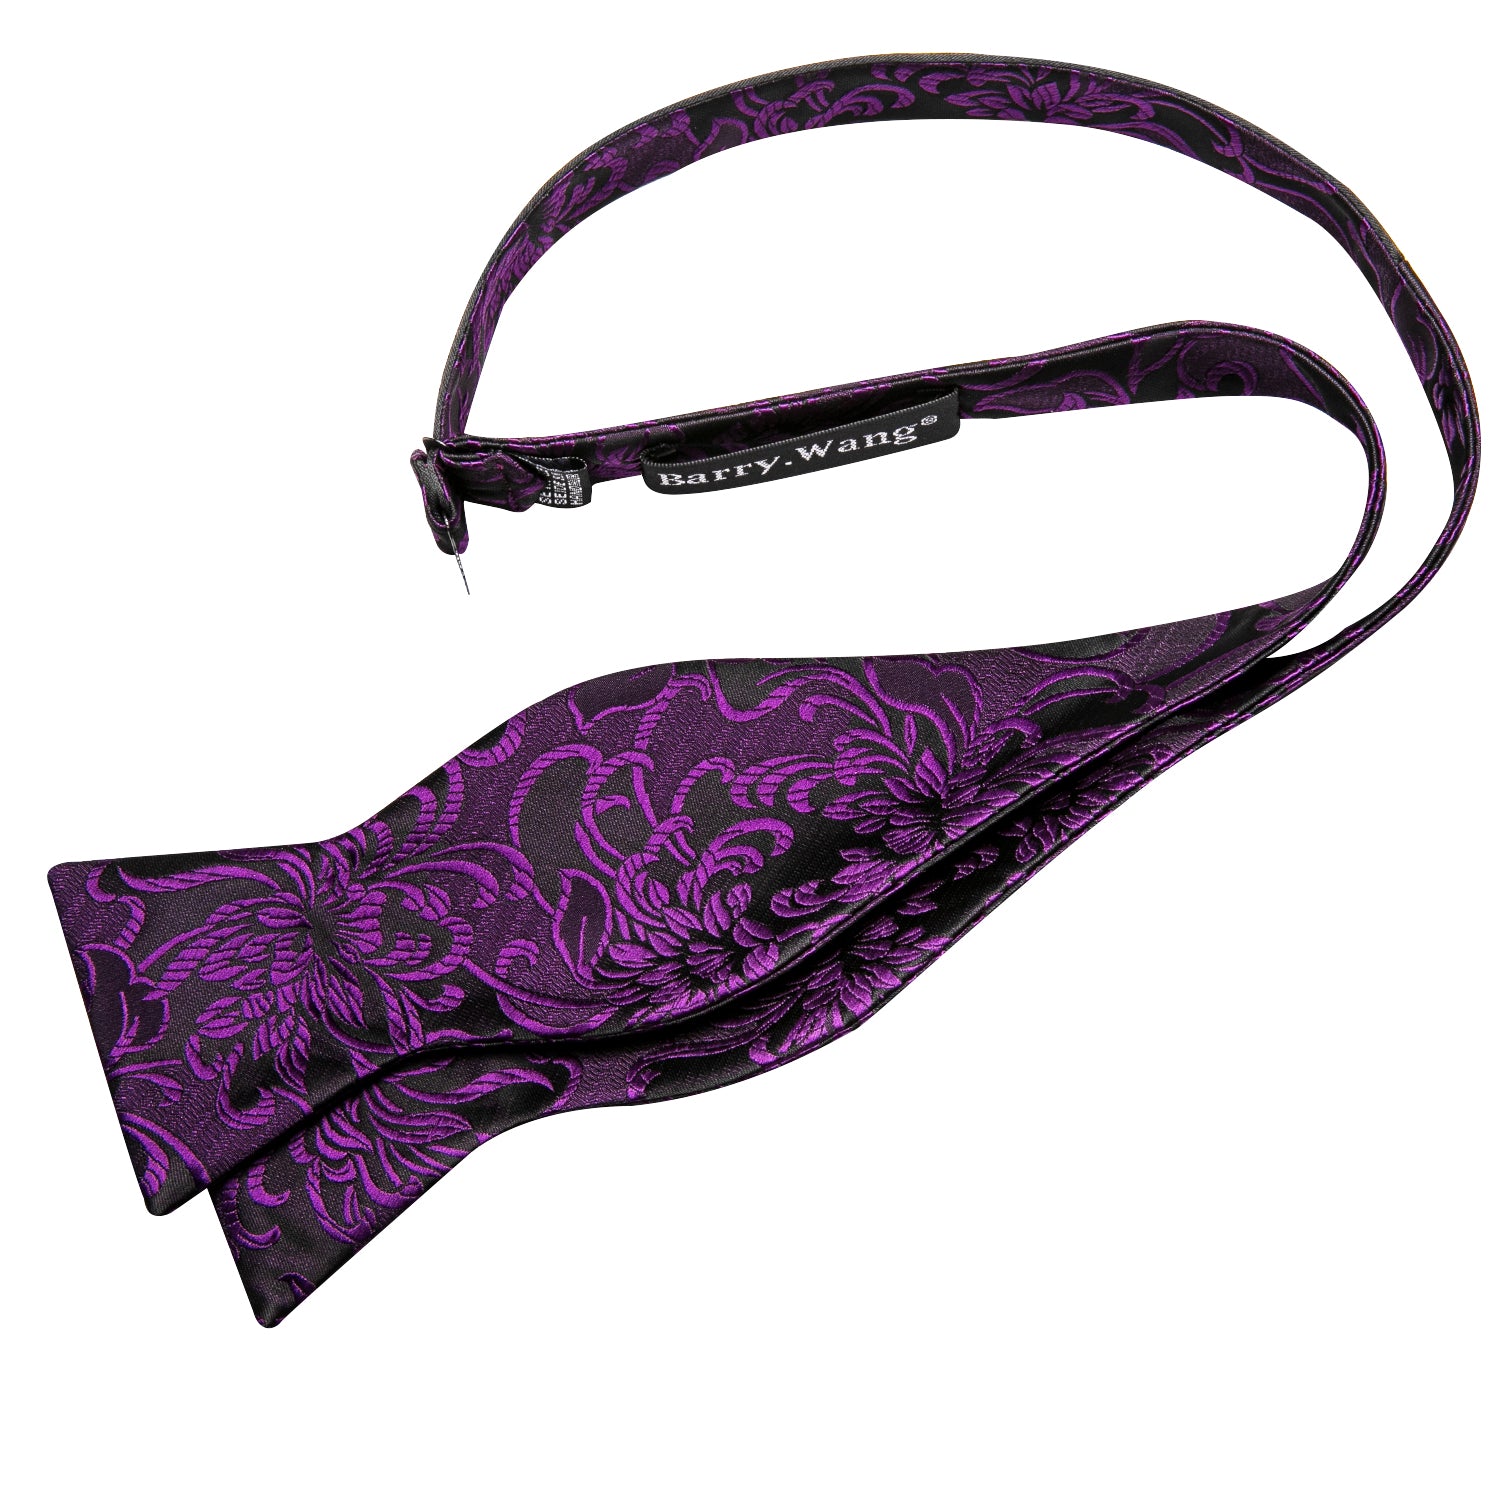 Barry.wang Black Tie Purple Floral Bow Tie Hanky Cufflinks Set